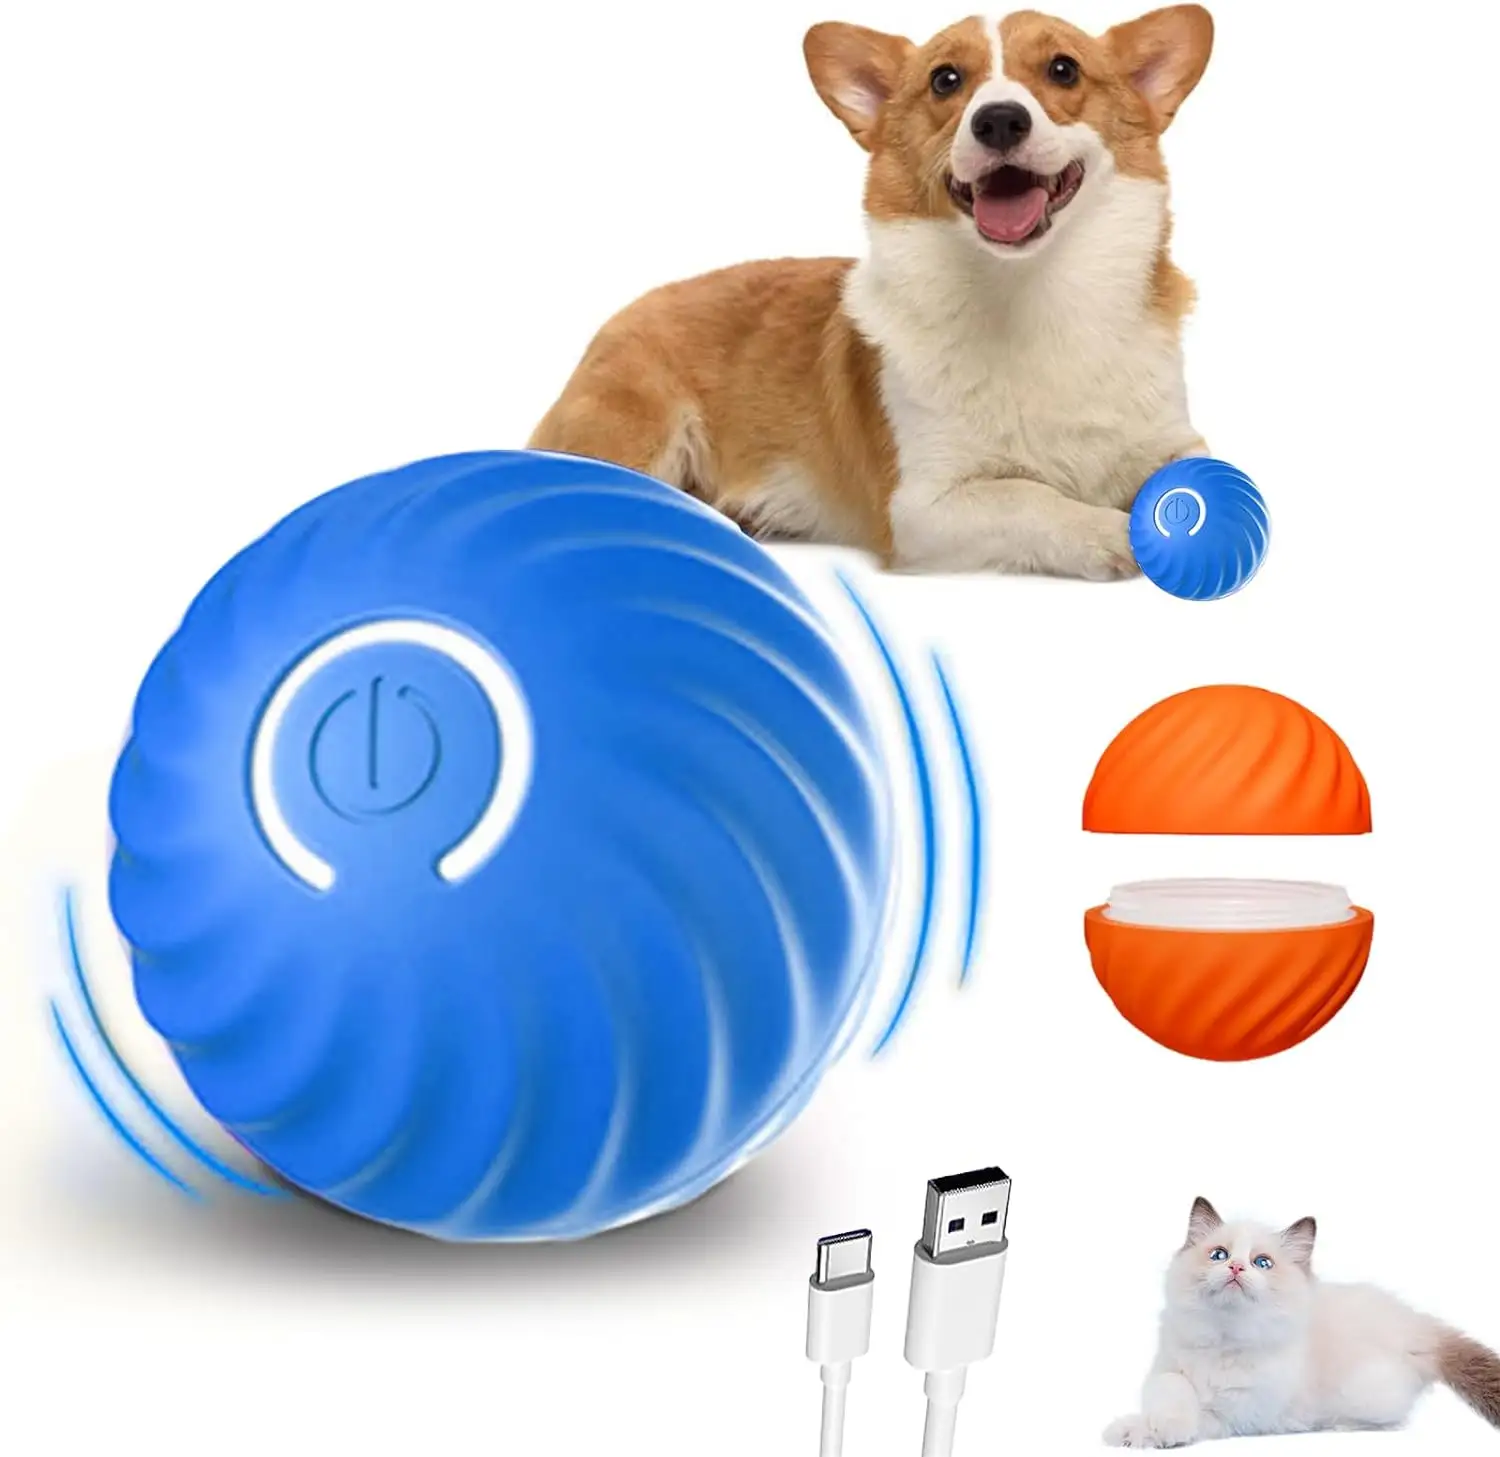 स्मार्ट ऑटोमैटिक रोलिंग बॉल इंटरैक्टिव डॉग कैट बॉल रबर इंटरैक्टिव पालतू कुत्ता खिलौना च्यू बॉल एलईडी लाइट के साथ